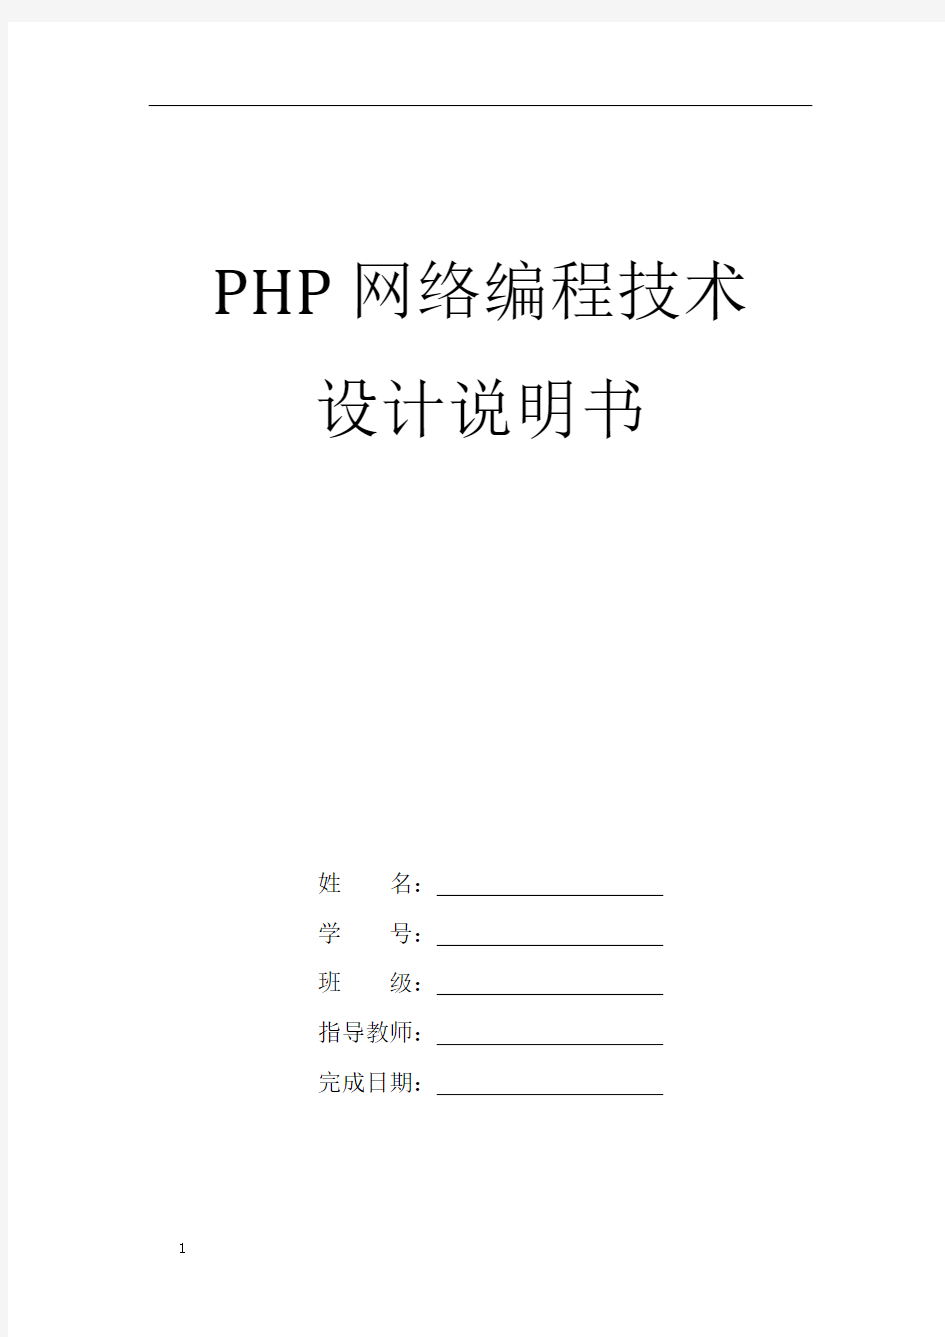 PHP系统设计说明书